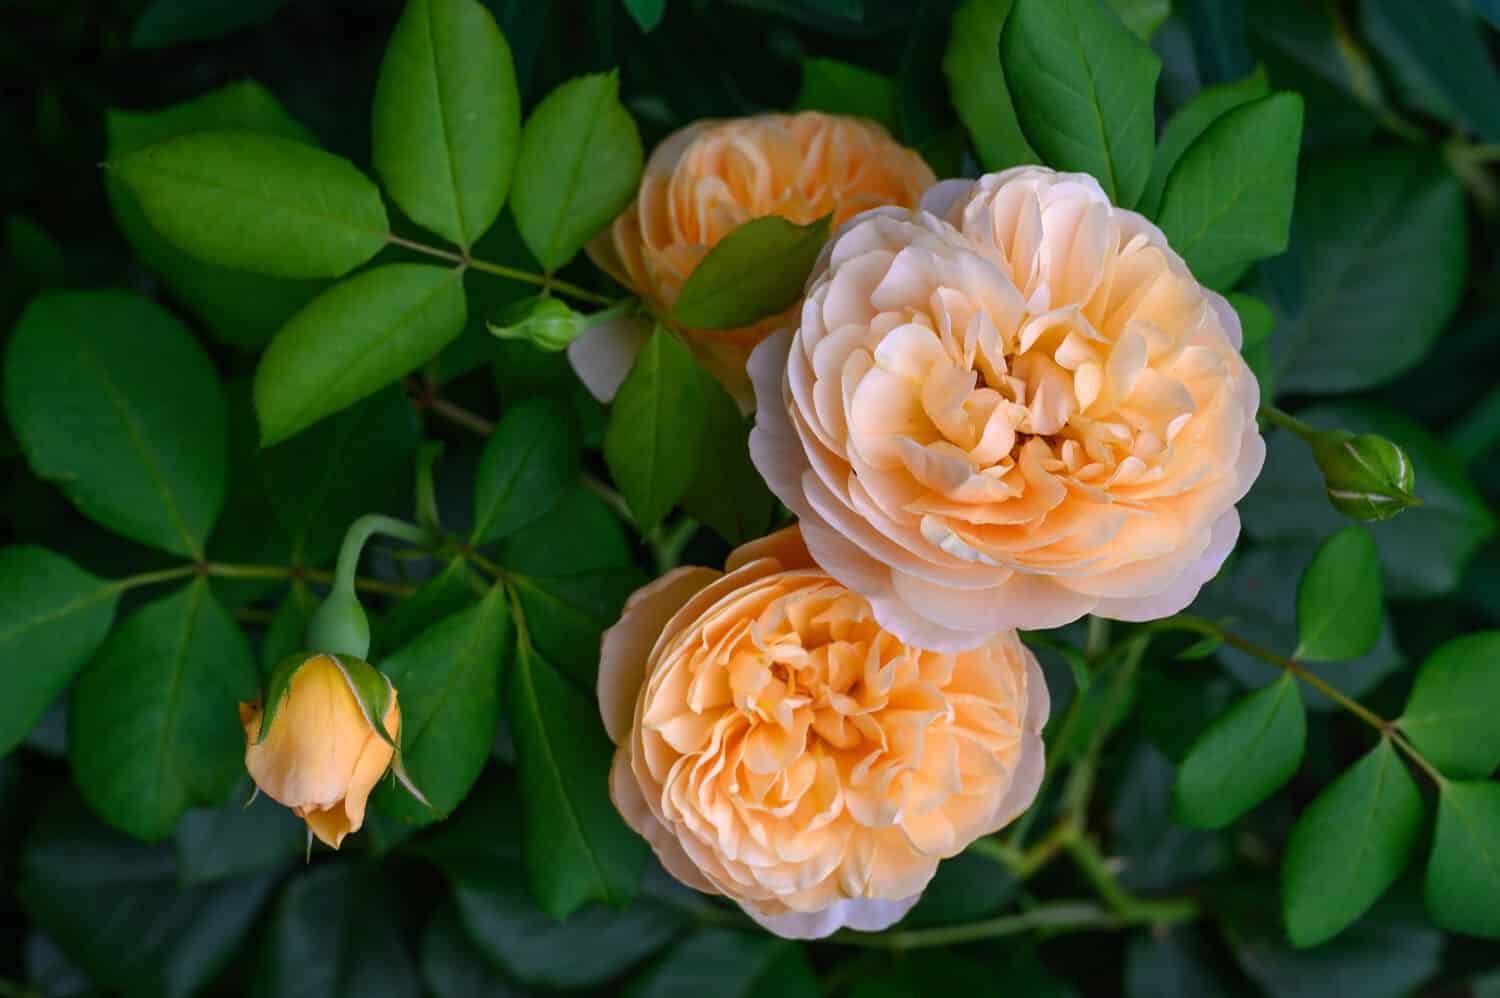 Rosa inglese color albicocca 'Roald Dahl' in fiore